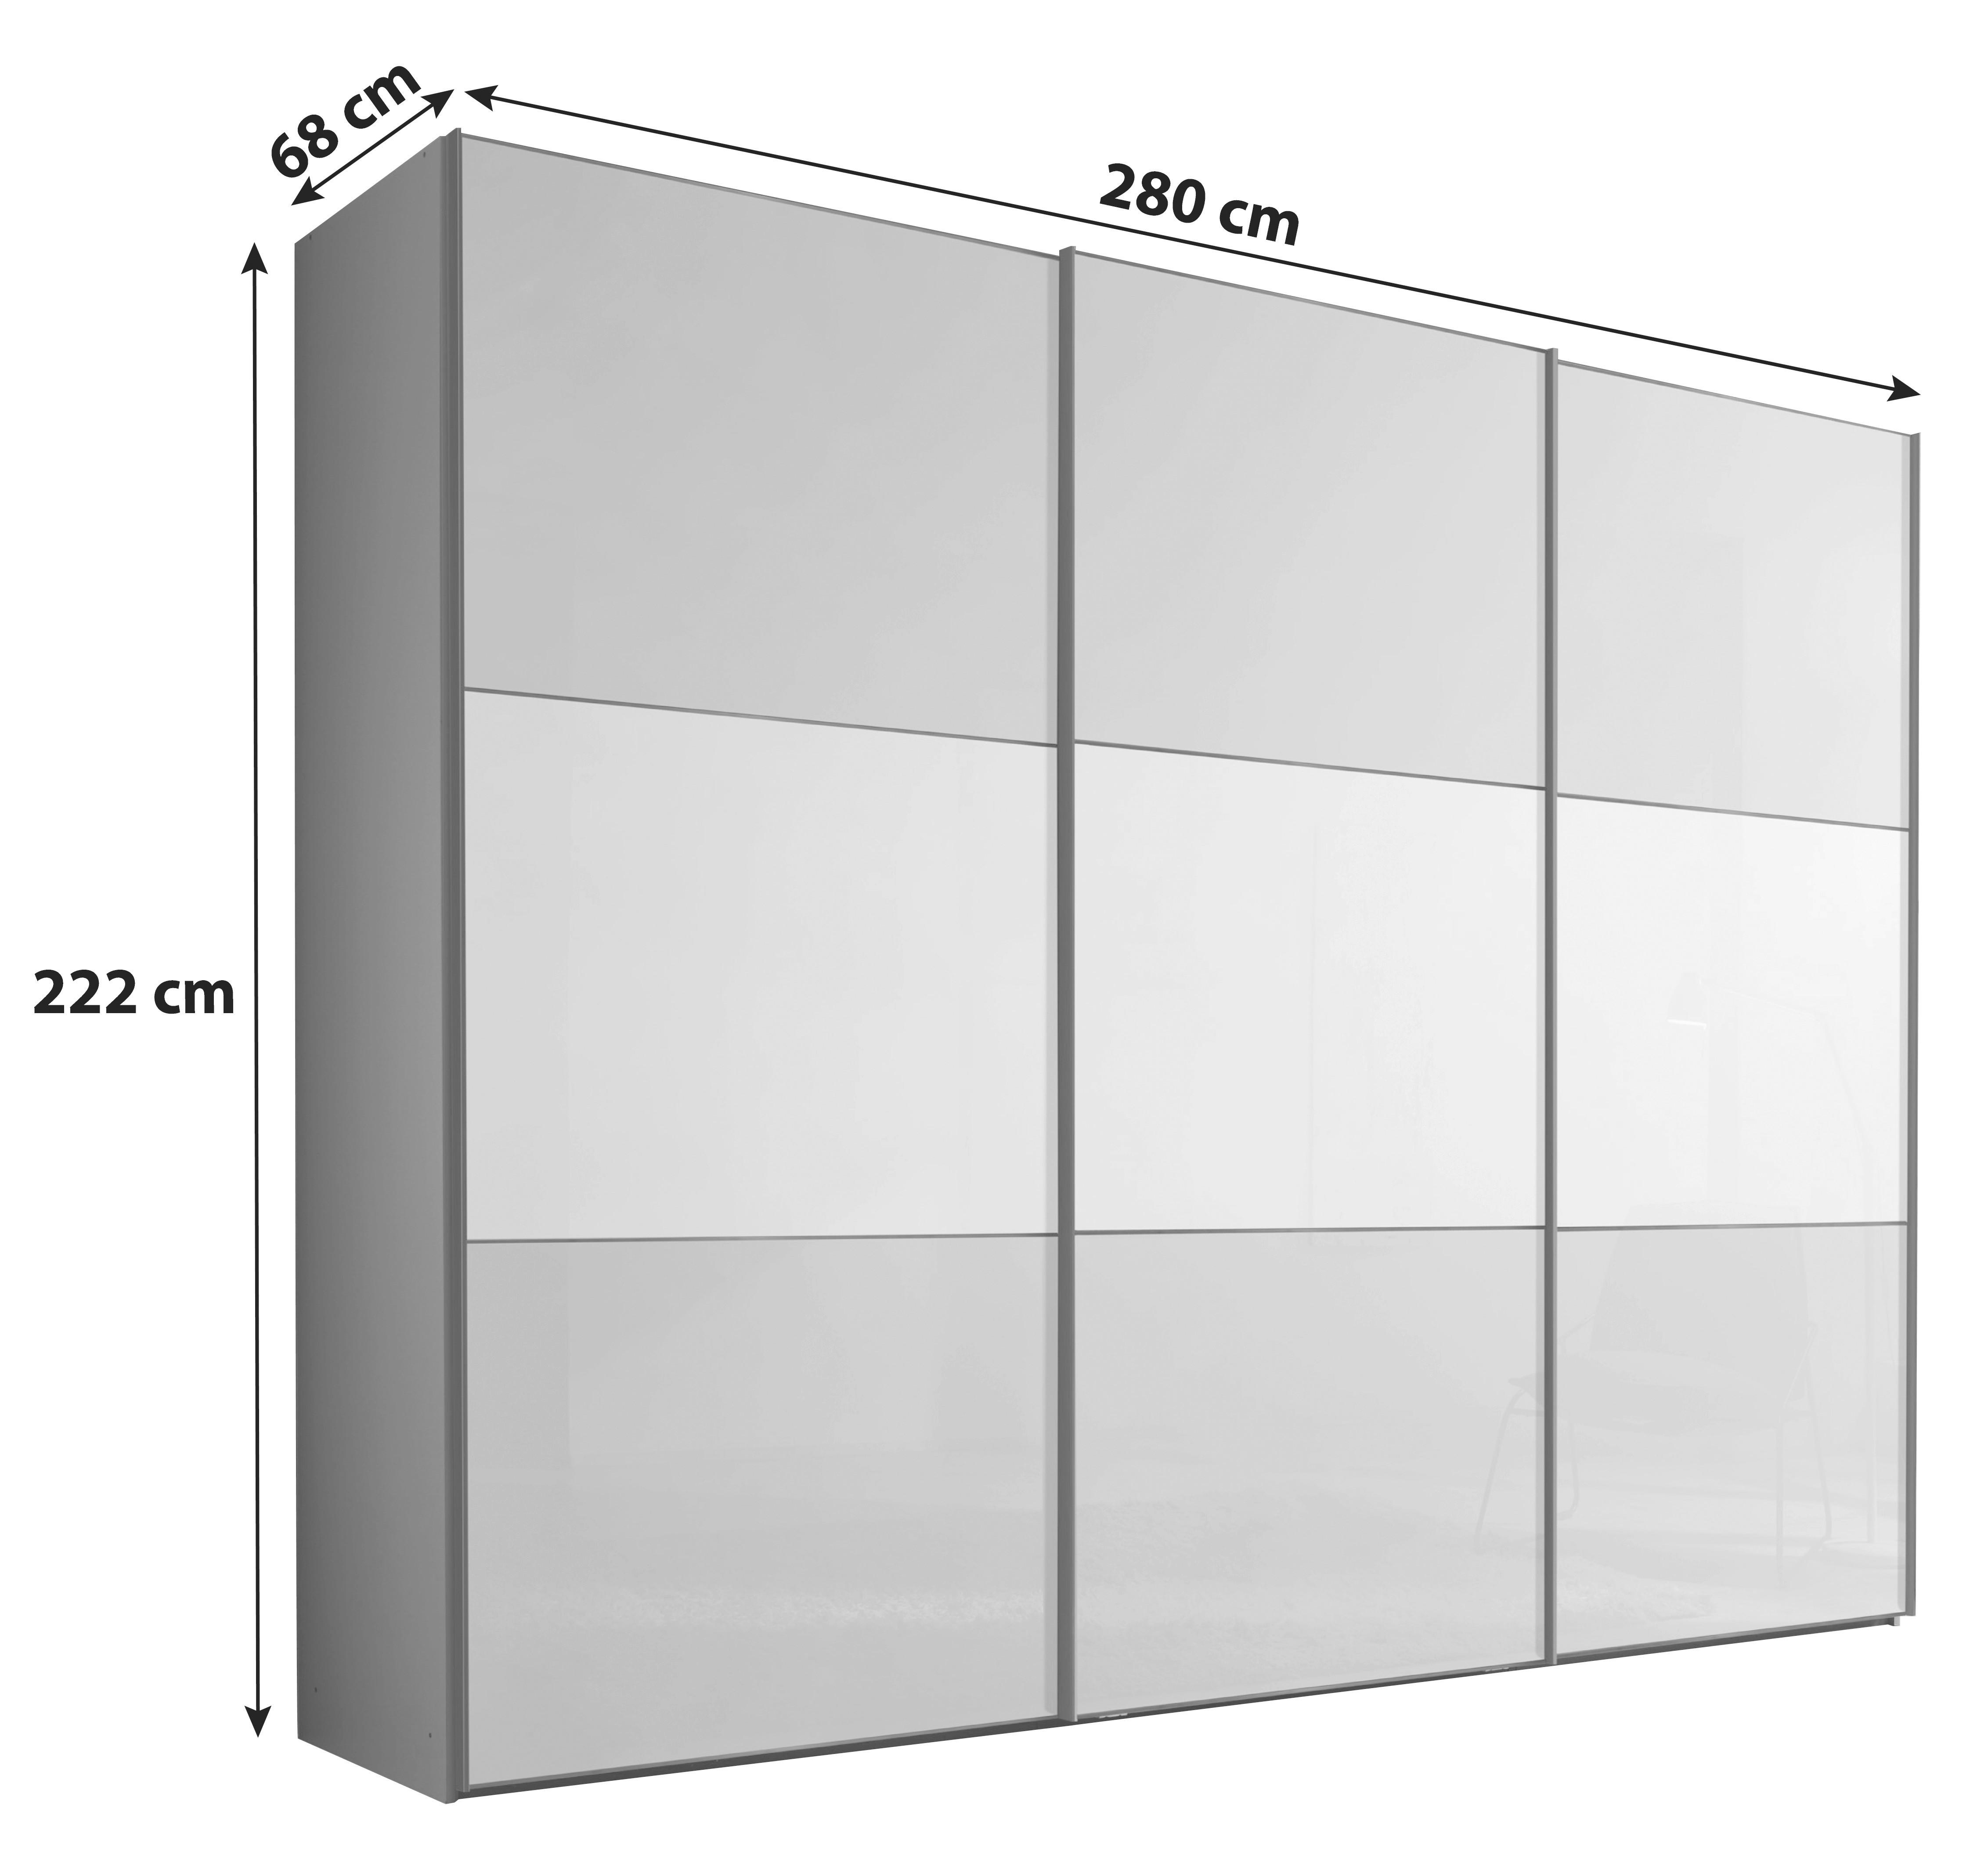 Schwebetürenschrank Glasfront 280 cm Includo, Hellgrau/Weiß - Dunkelgrau/Hellgrau, MODERN, Glas/Holzwerkstoff (280/222/68cm)